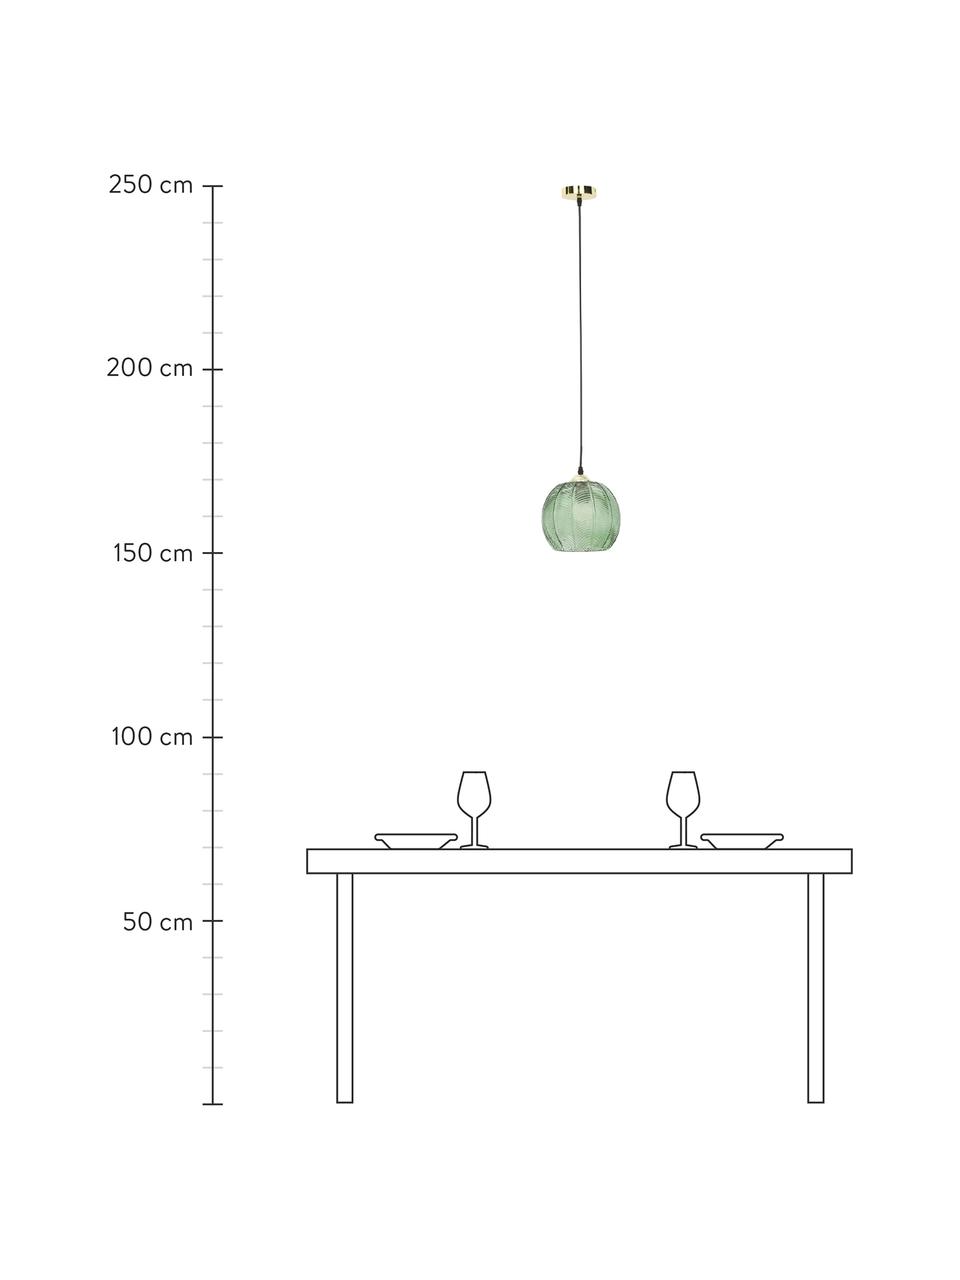 Lámpara de techo pequeña Luisa, Pantalla: vidrio, Anclaje: metal pintado, Cable: plástico, Verde, Ø 22 x Al 20 cm